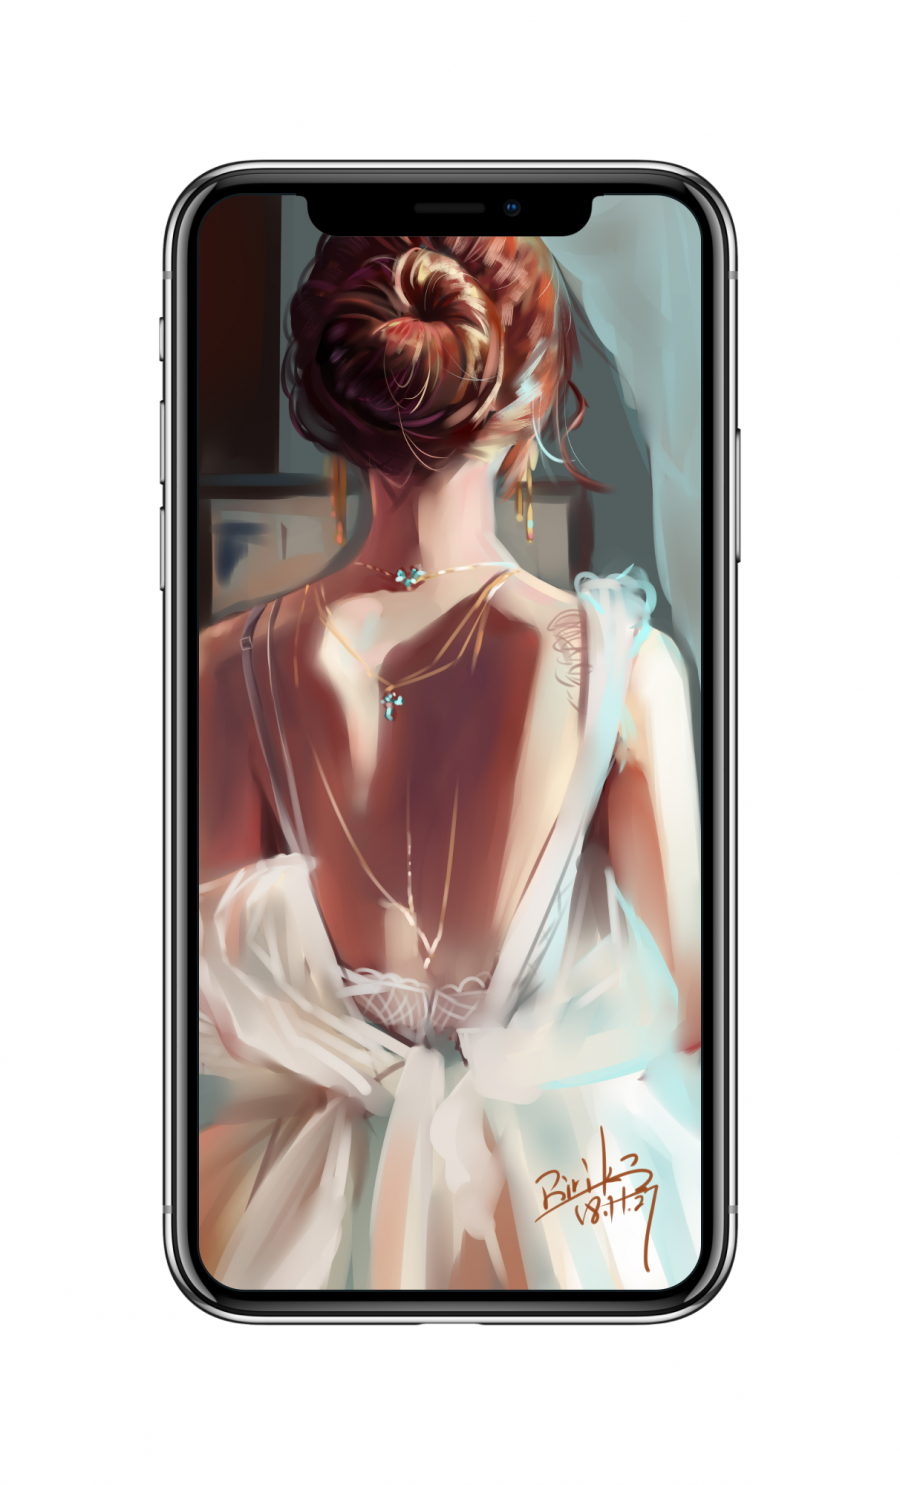 少女,唯美后背,后颈,4k手机壁纸美女2160×3840